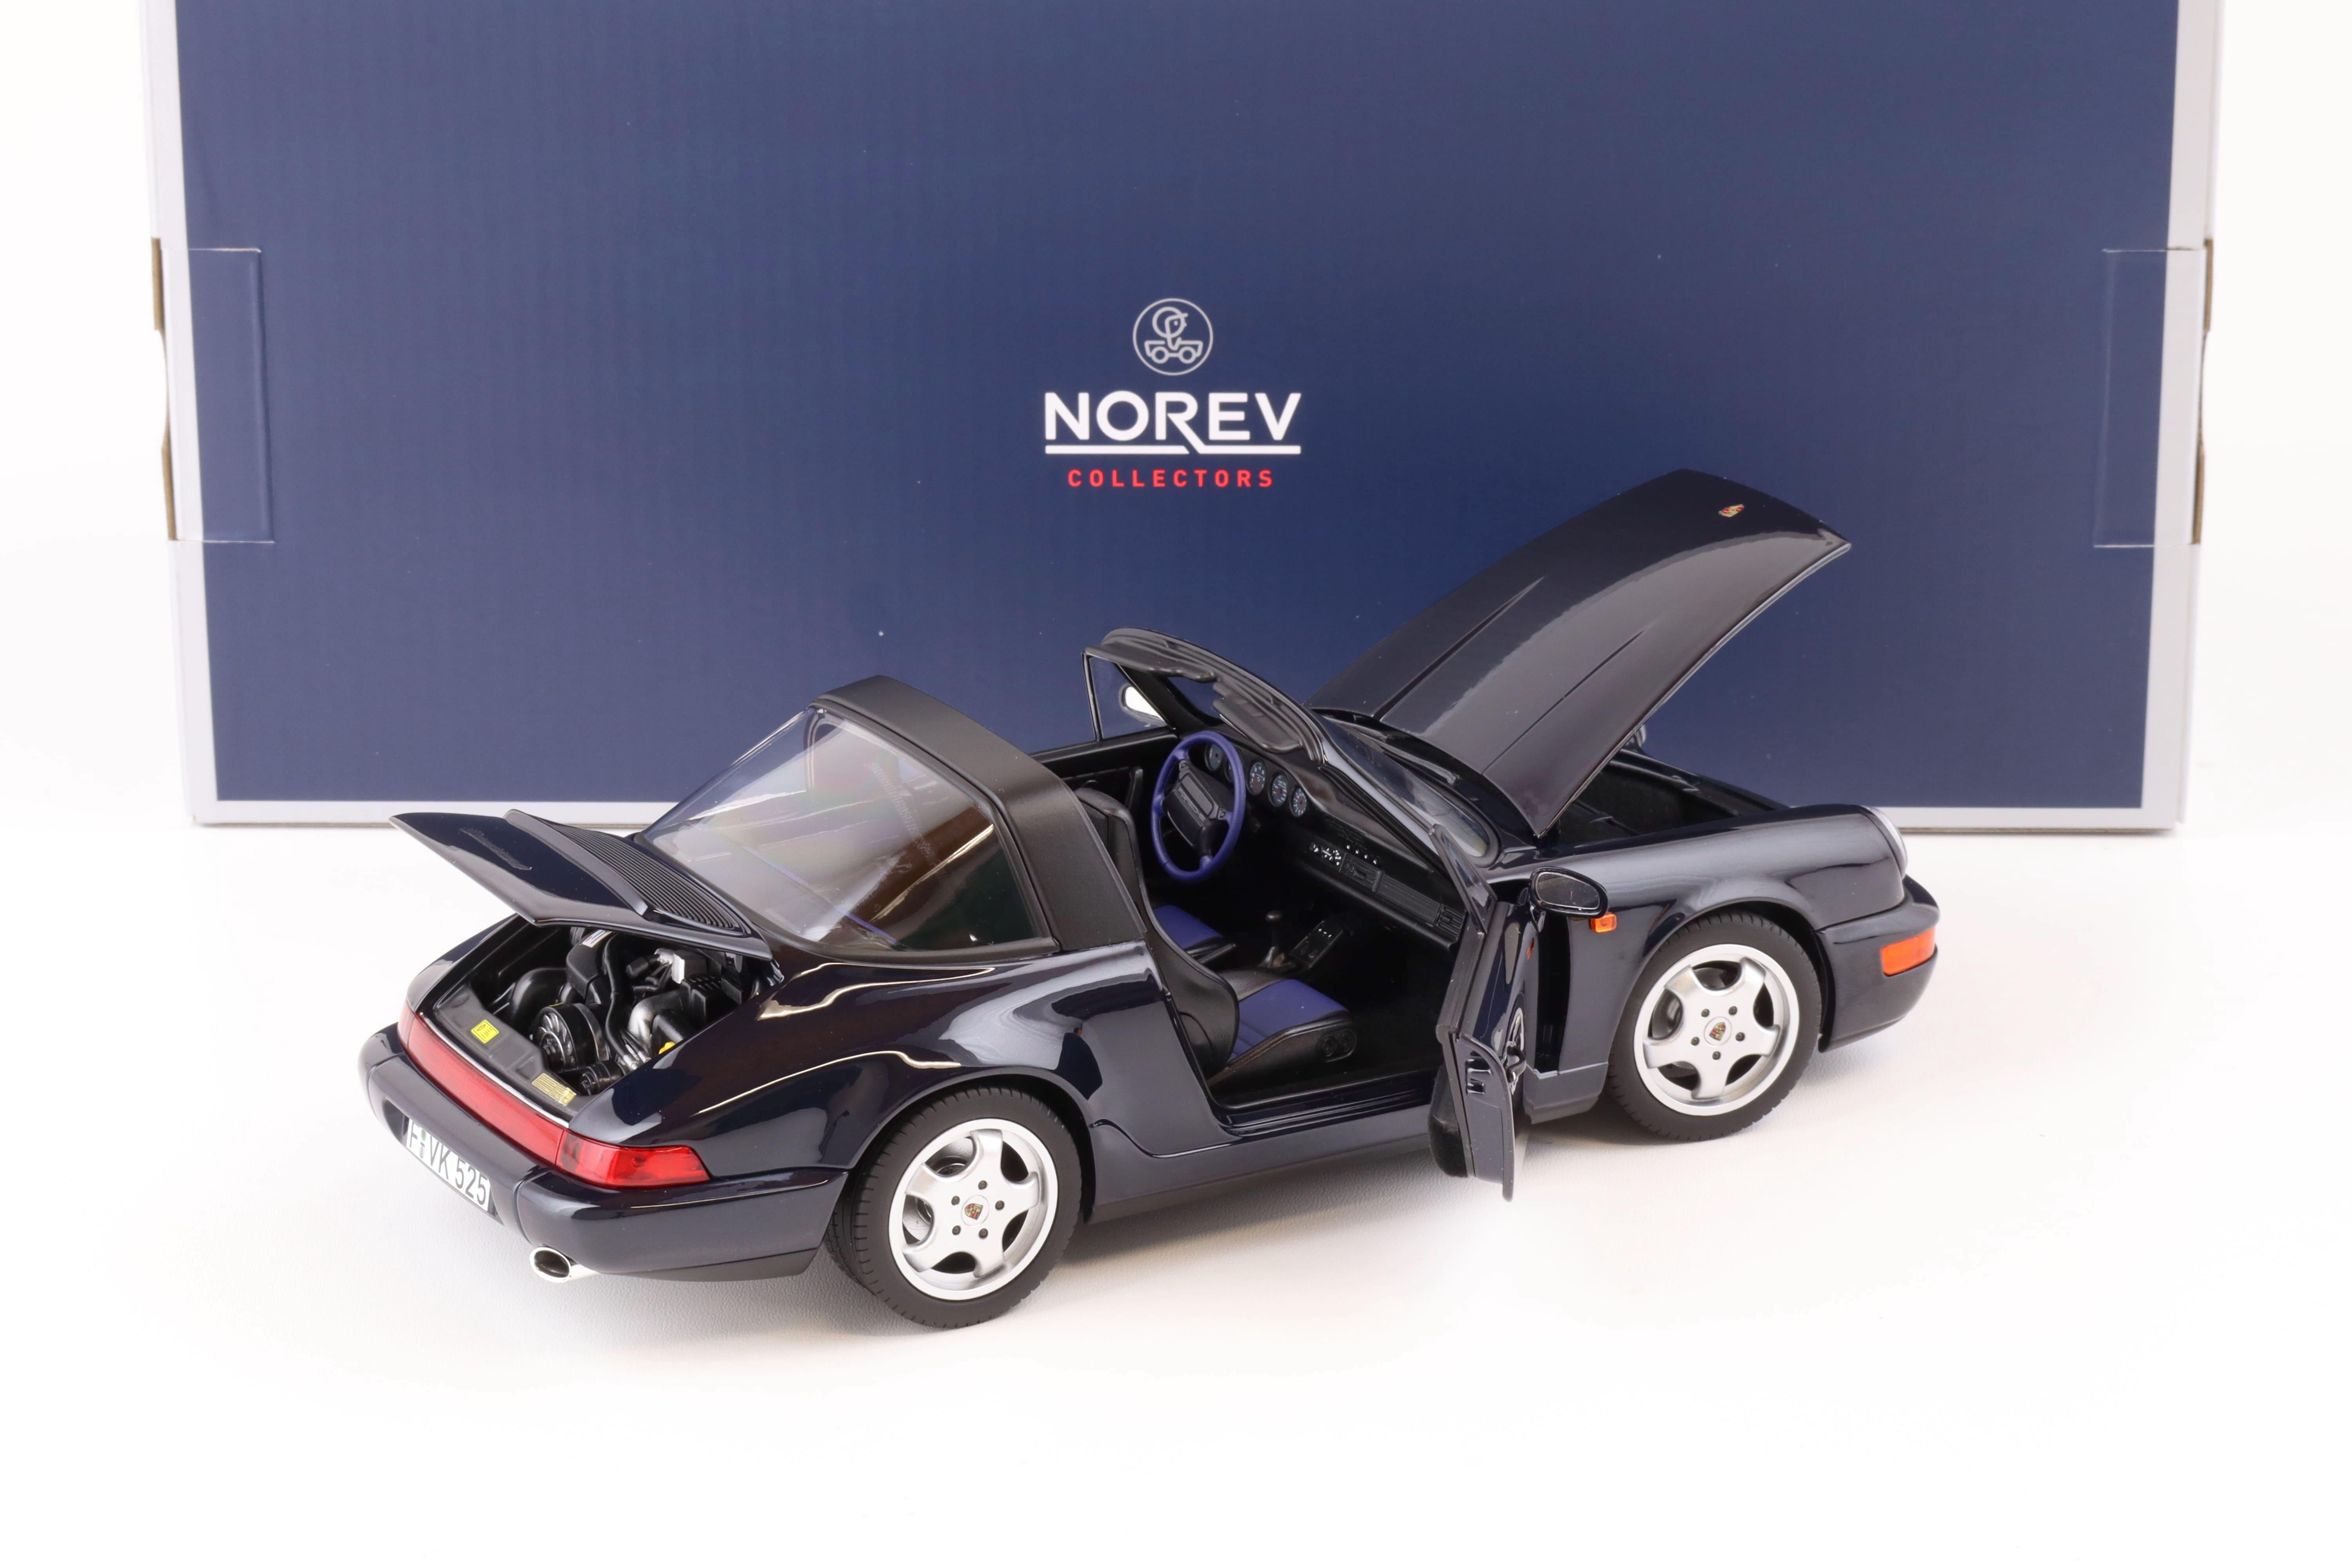 1:18 Norev Porsche 911 (964) Carrera 4 Targa 1991 blue metallic